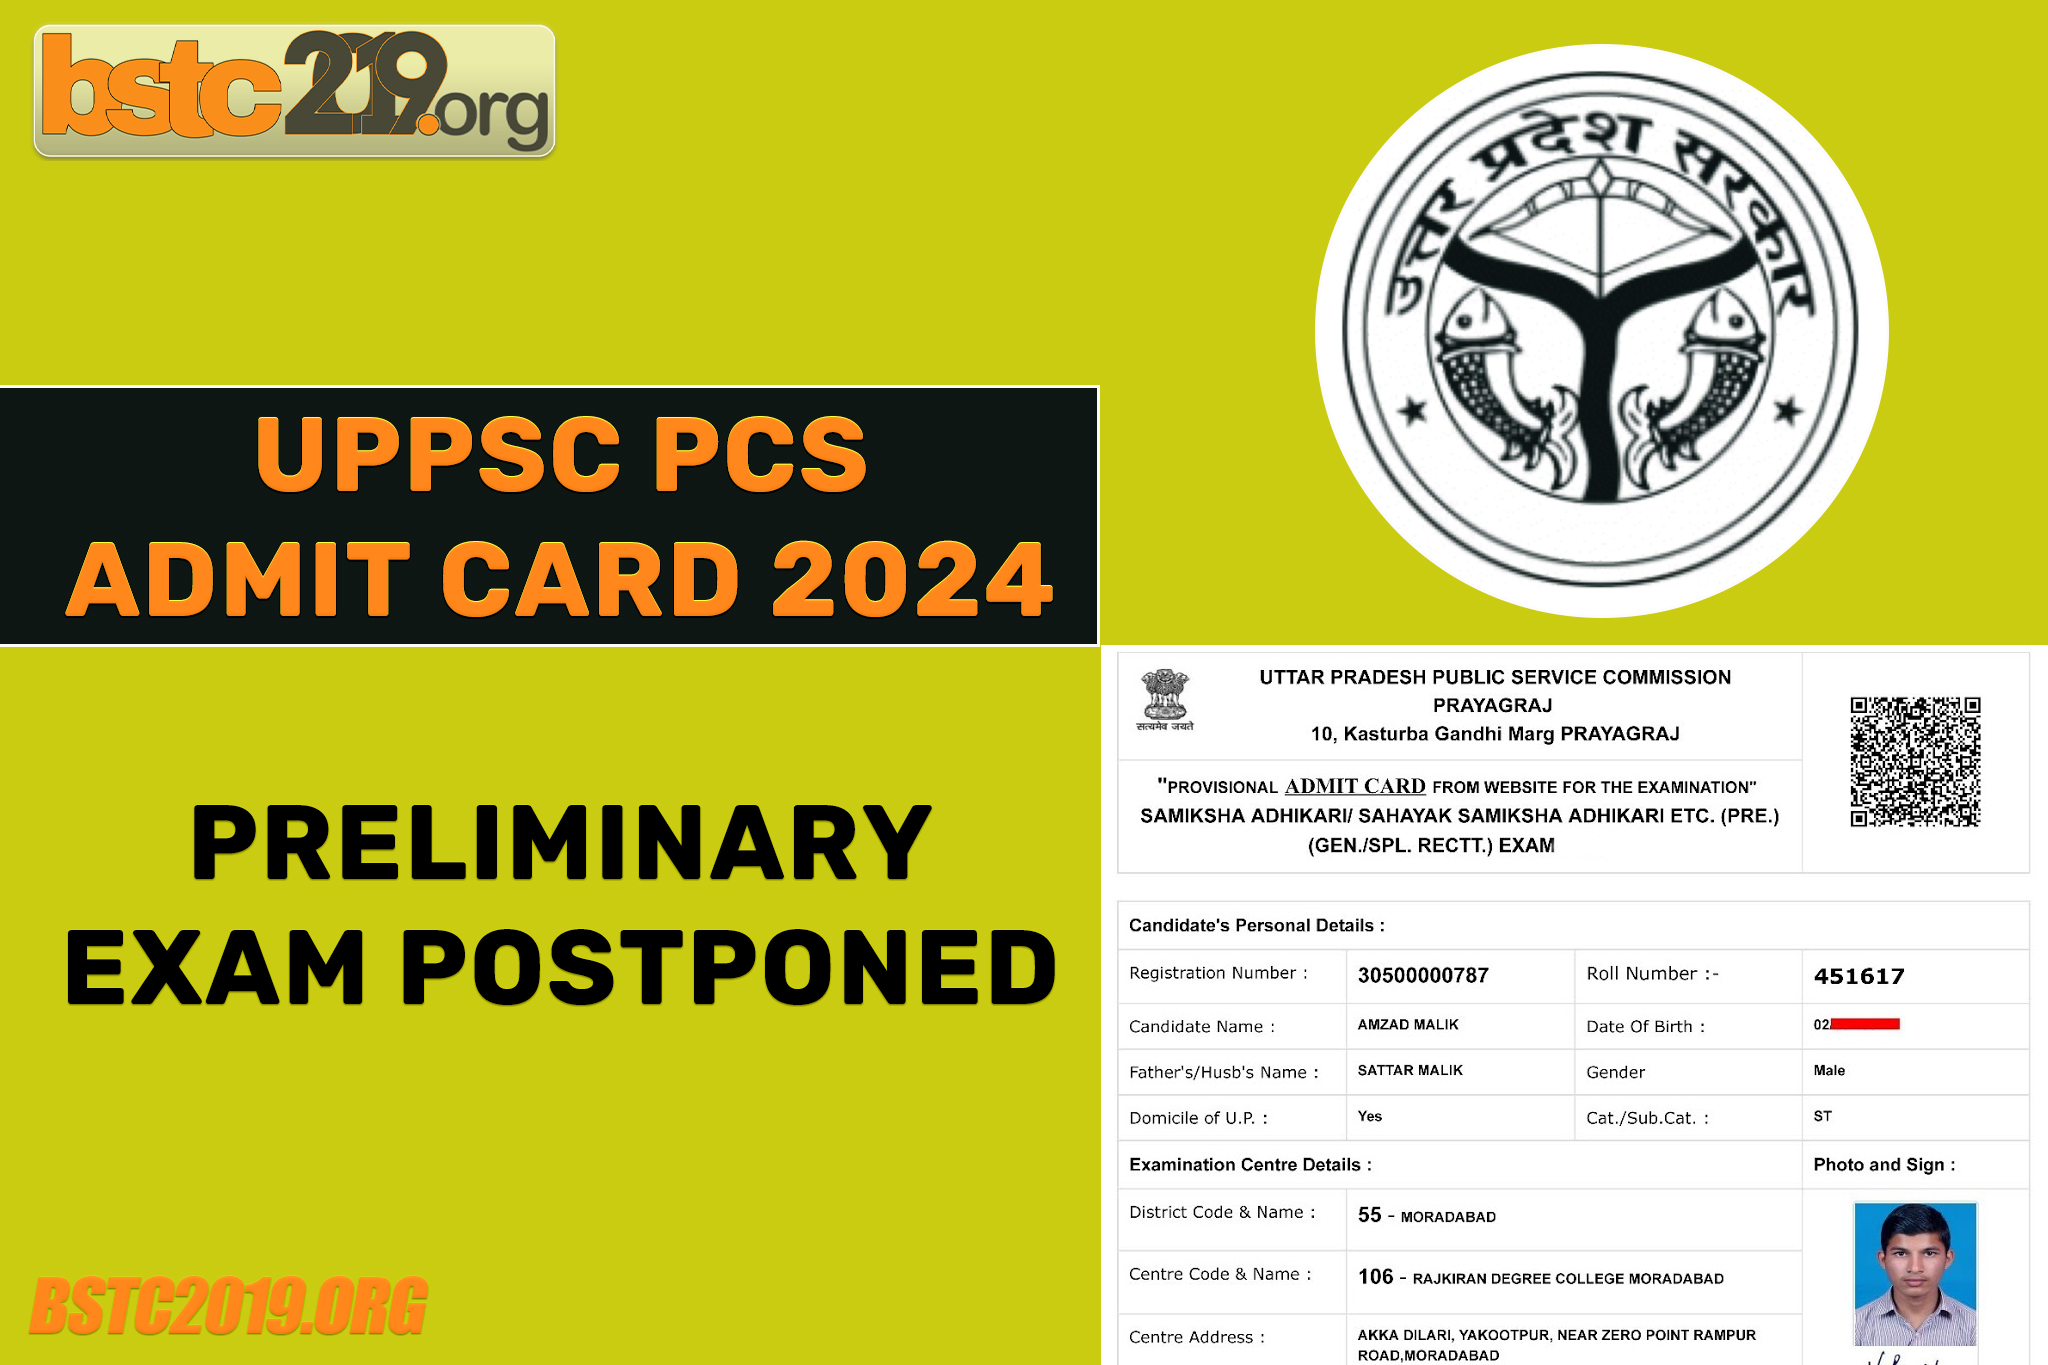 UPPSC admit card 2024